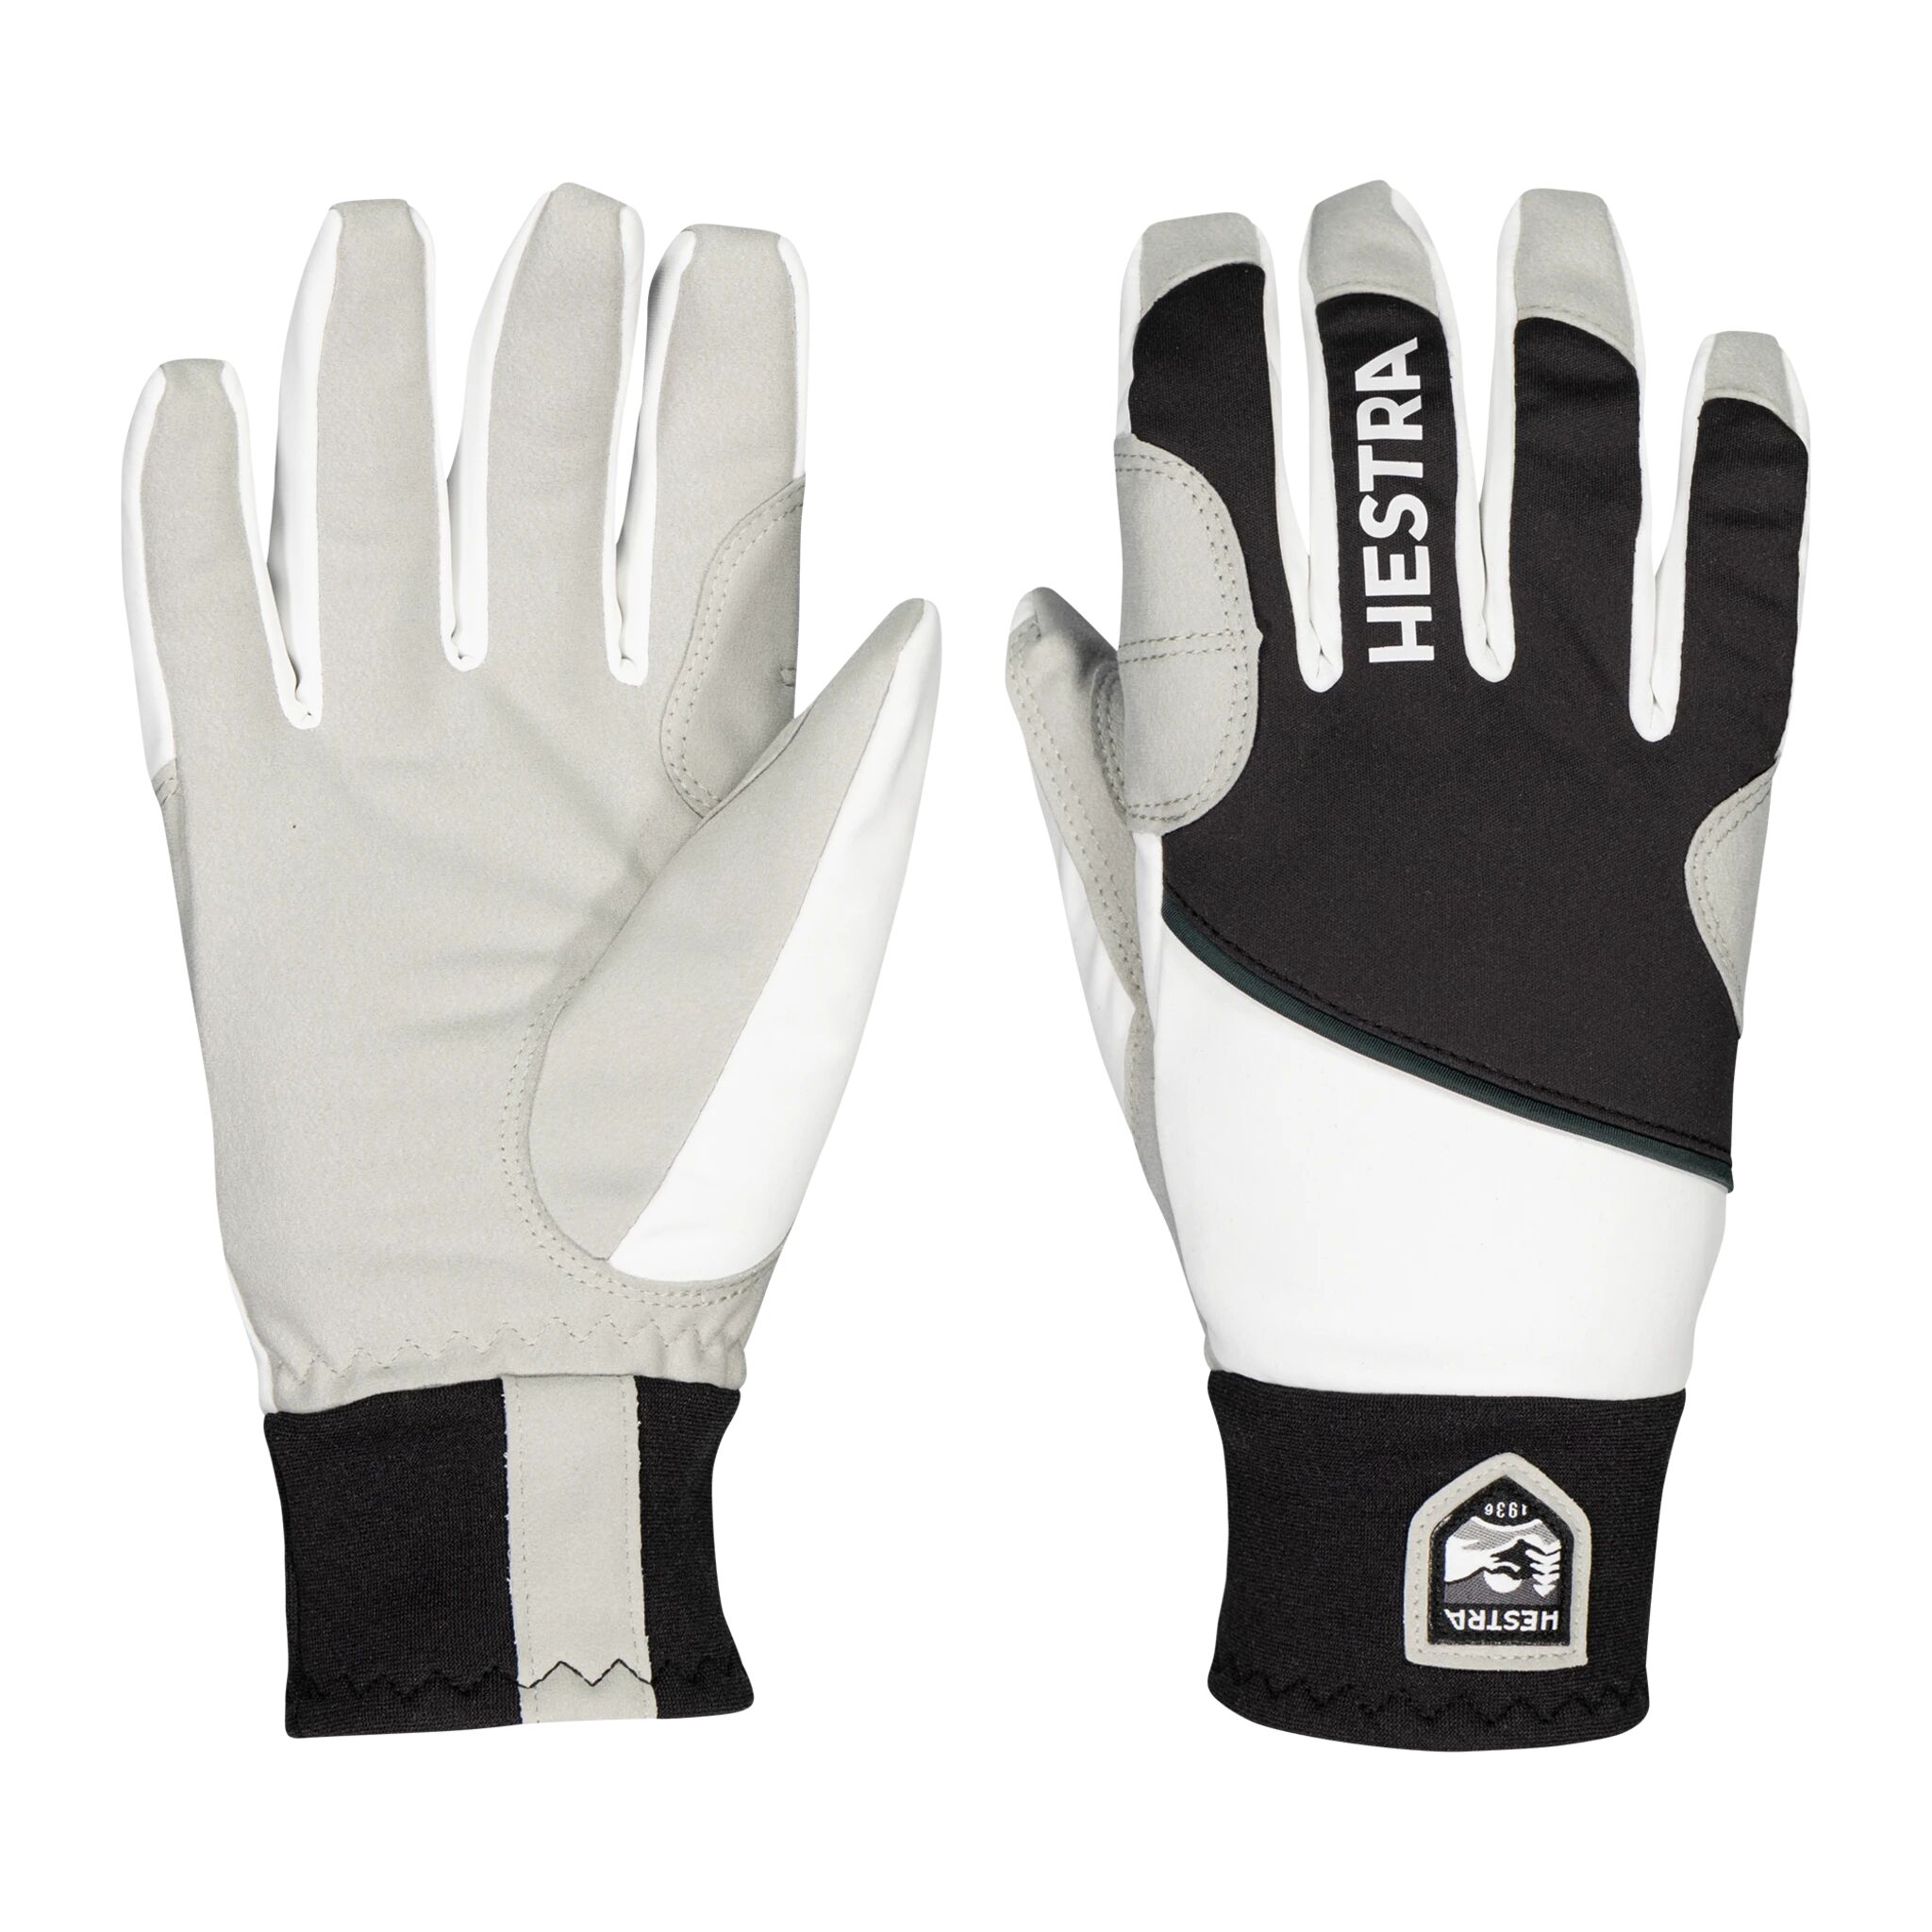 Hestra Glove Comfort Tracker 5 finger 21/22, langrennshanske unisex 11 Black/Ivory